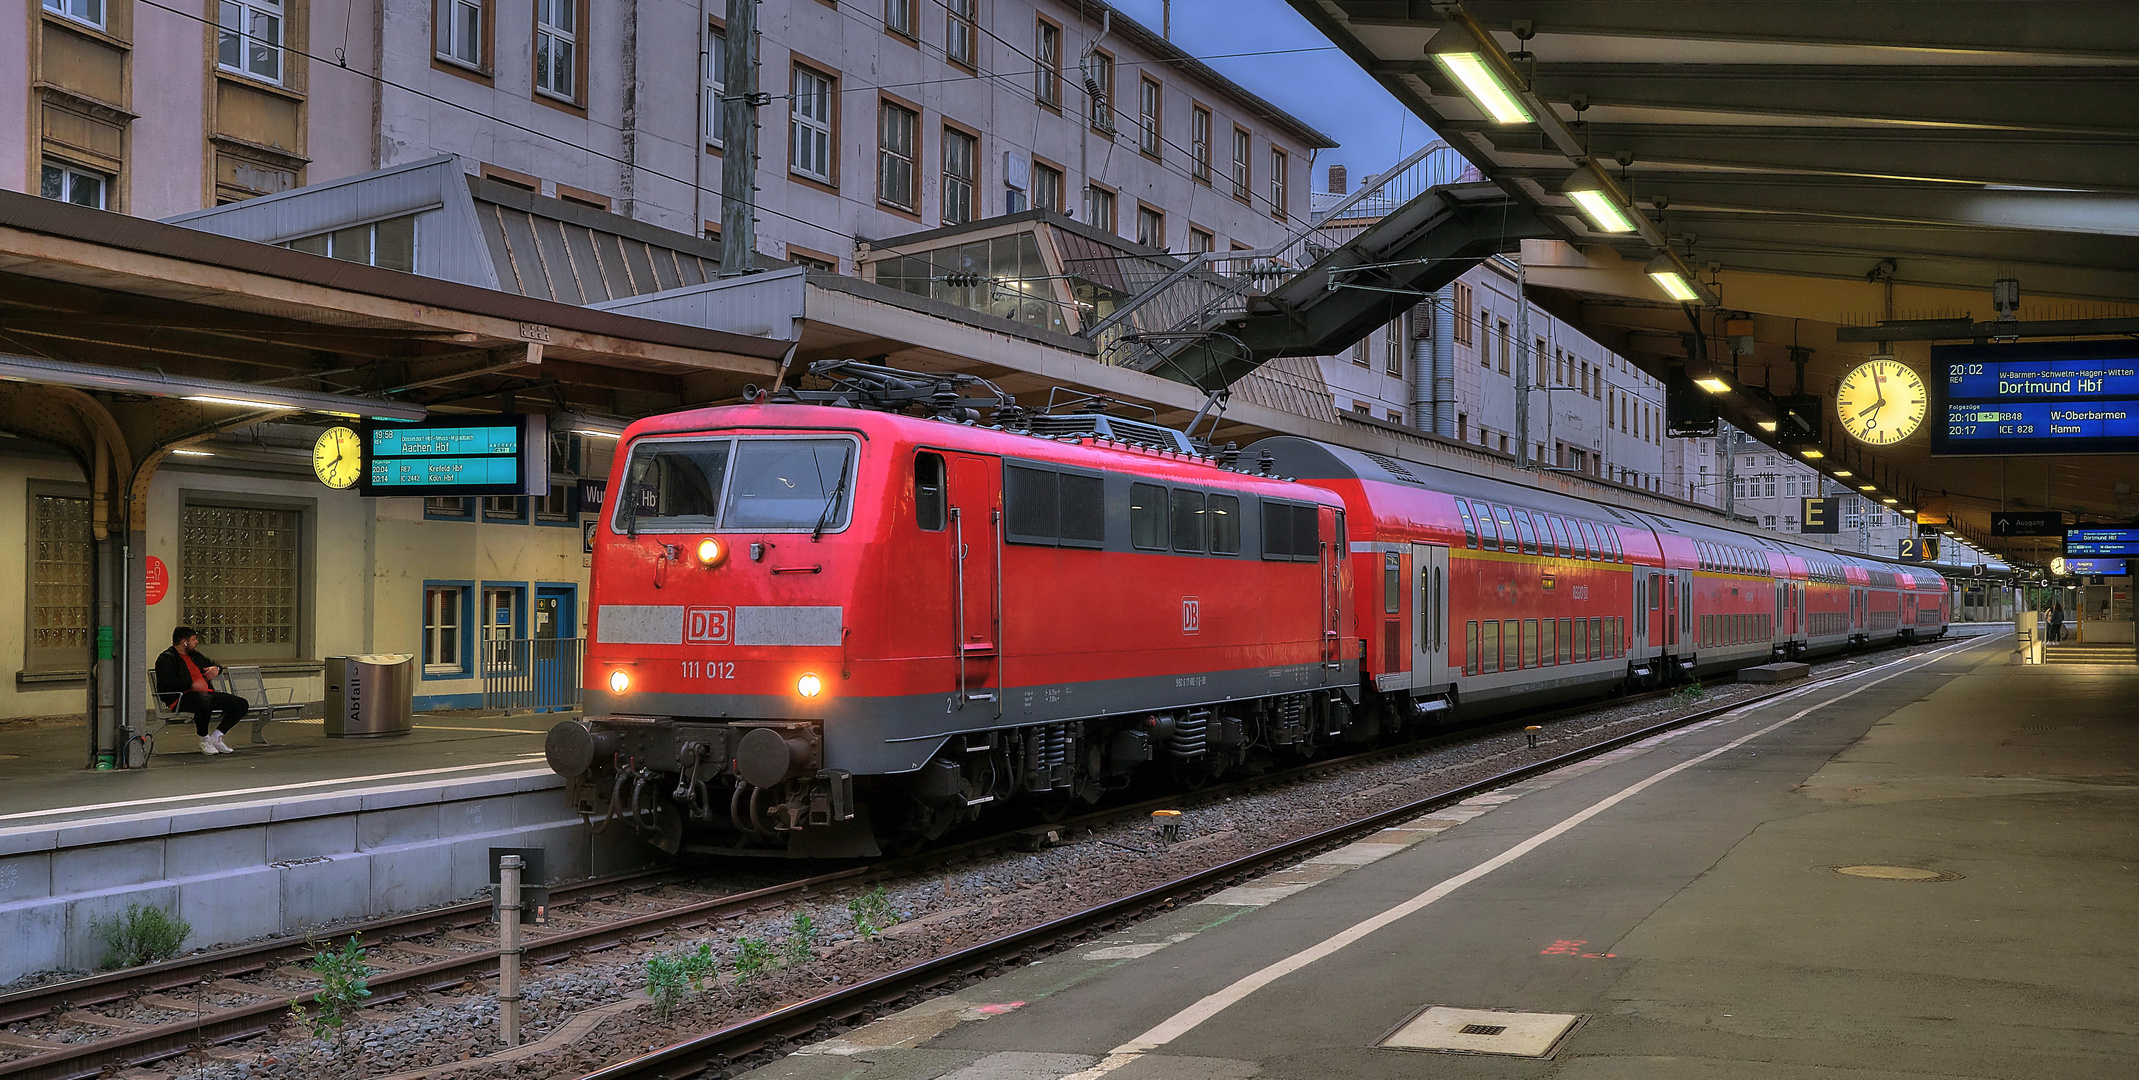 DB-BR 111 am 9.9.2020 im Hbf Wuppertal